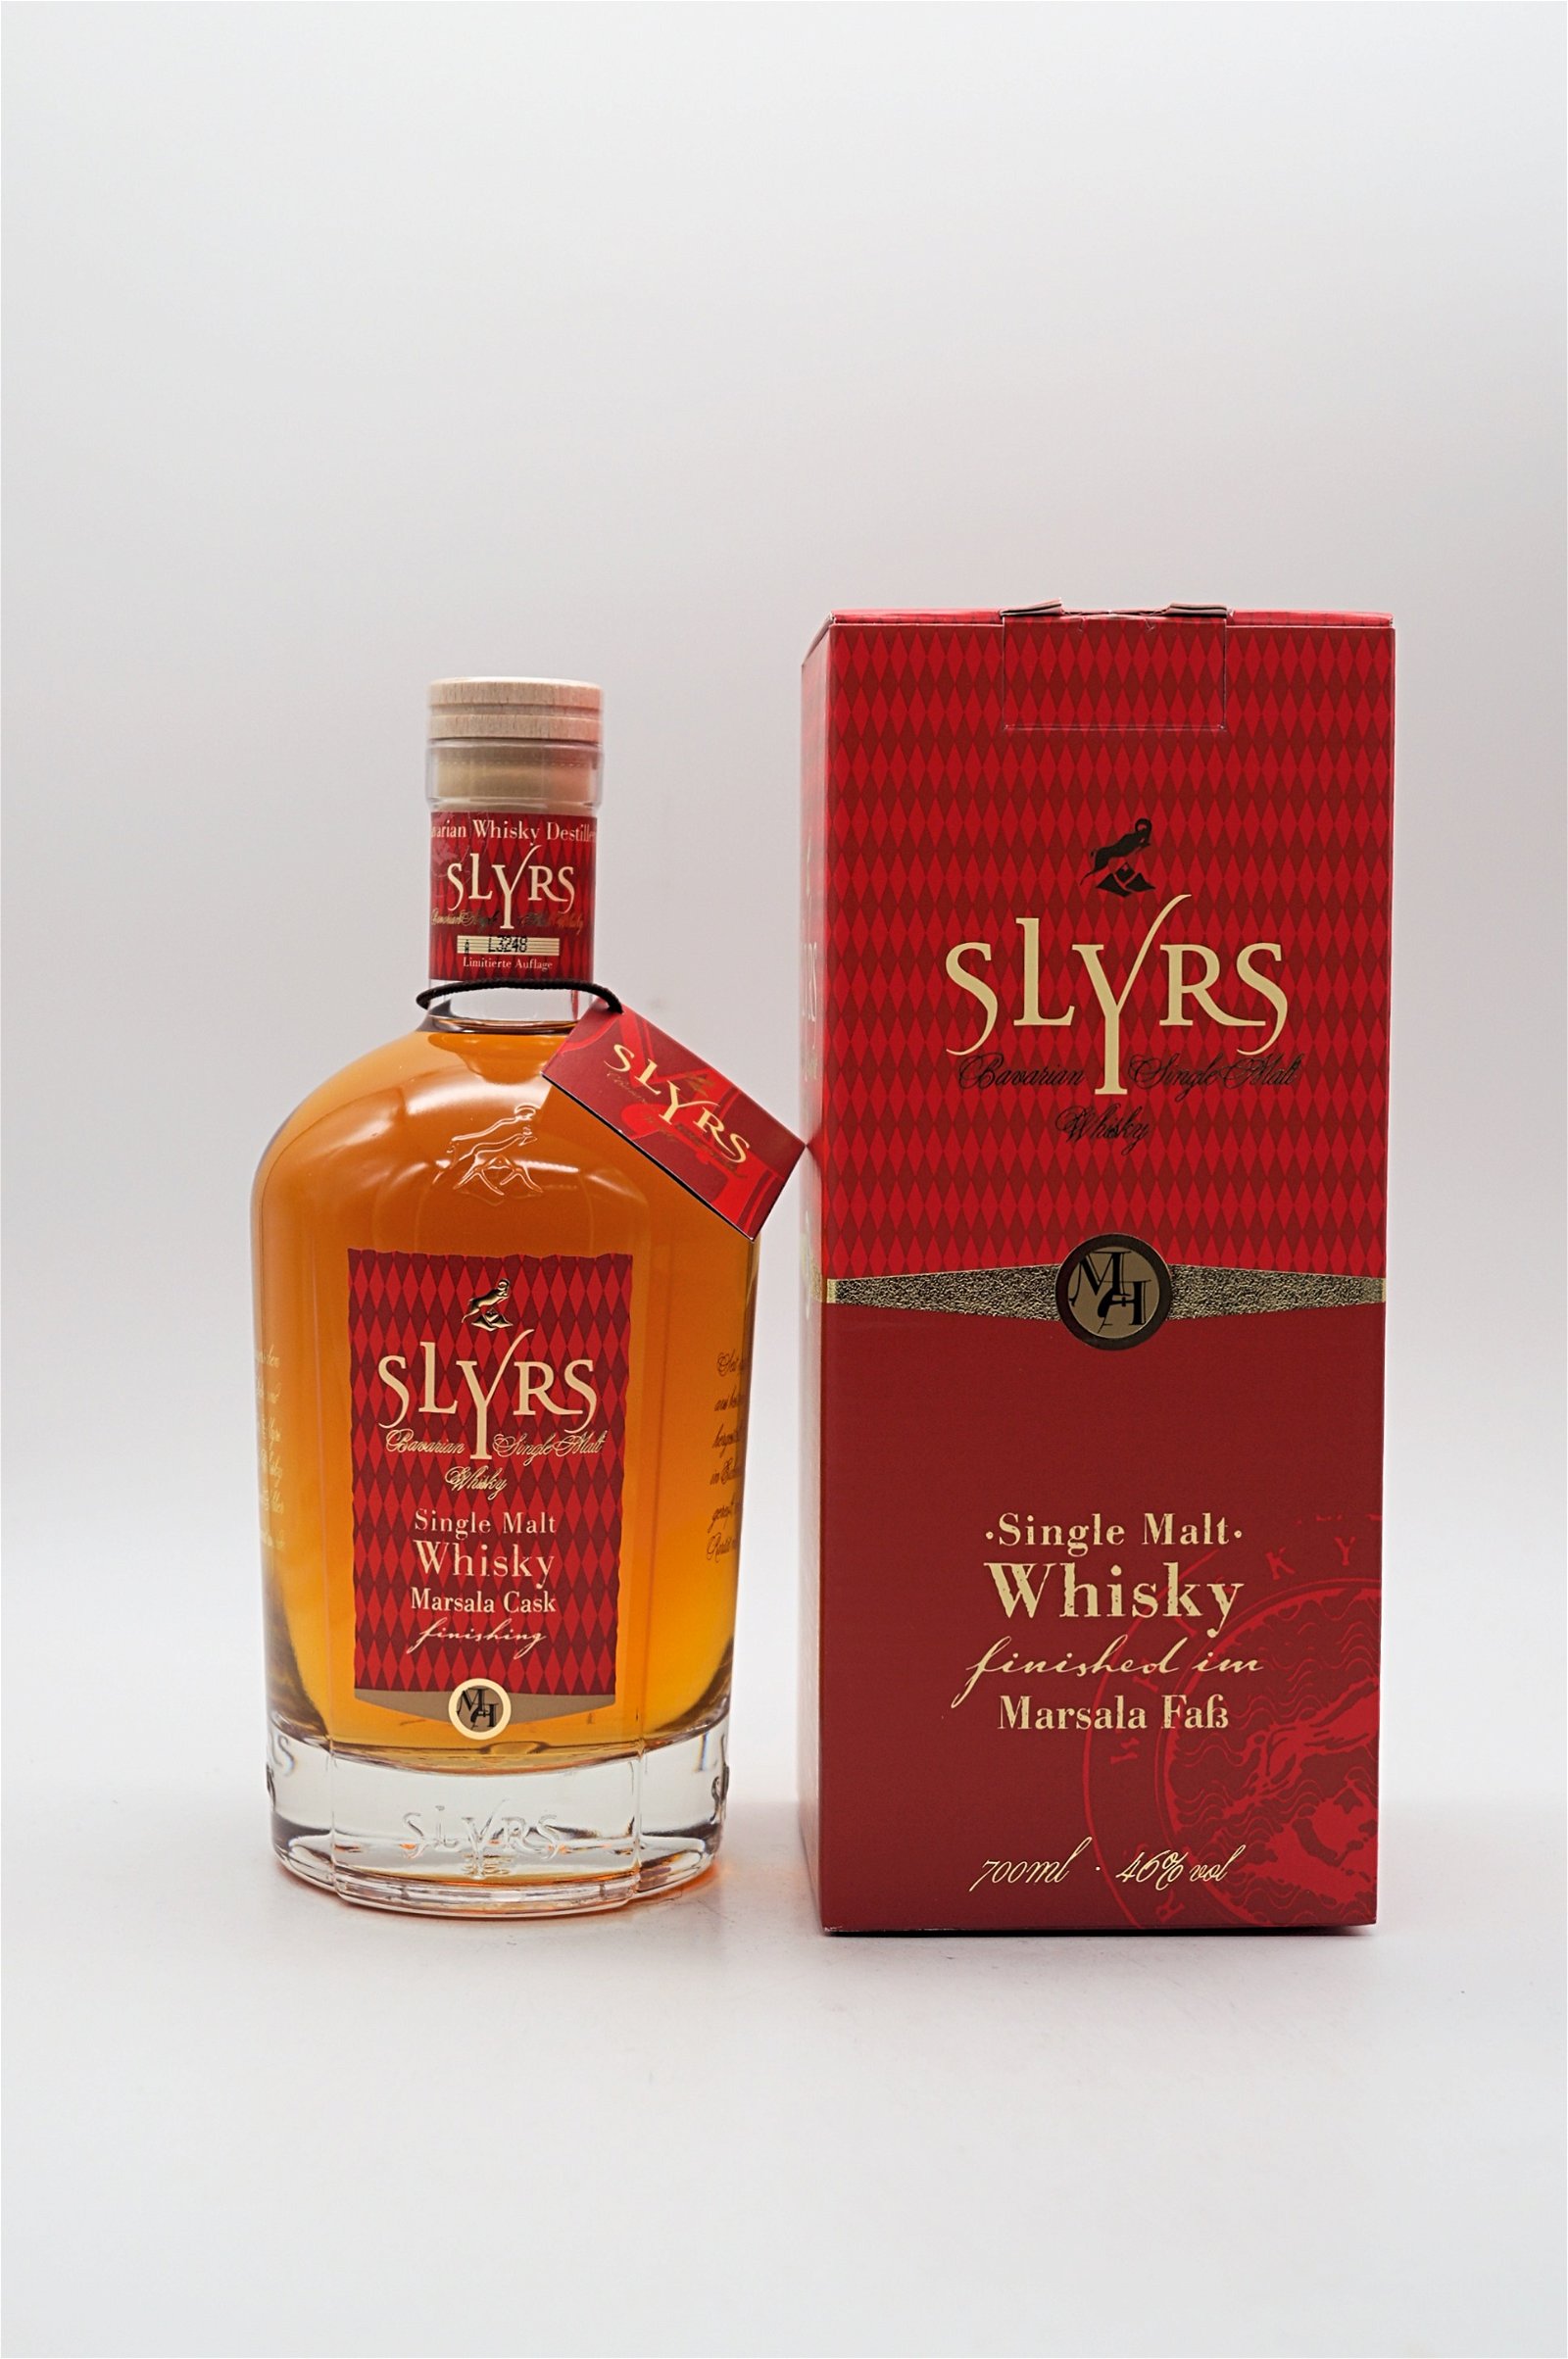 Slyrs Single Malt Whisky Marsala Cask Finishing